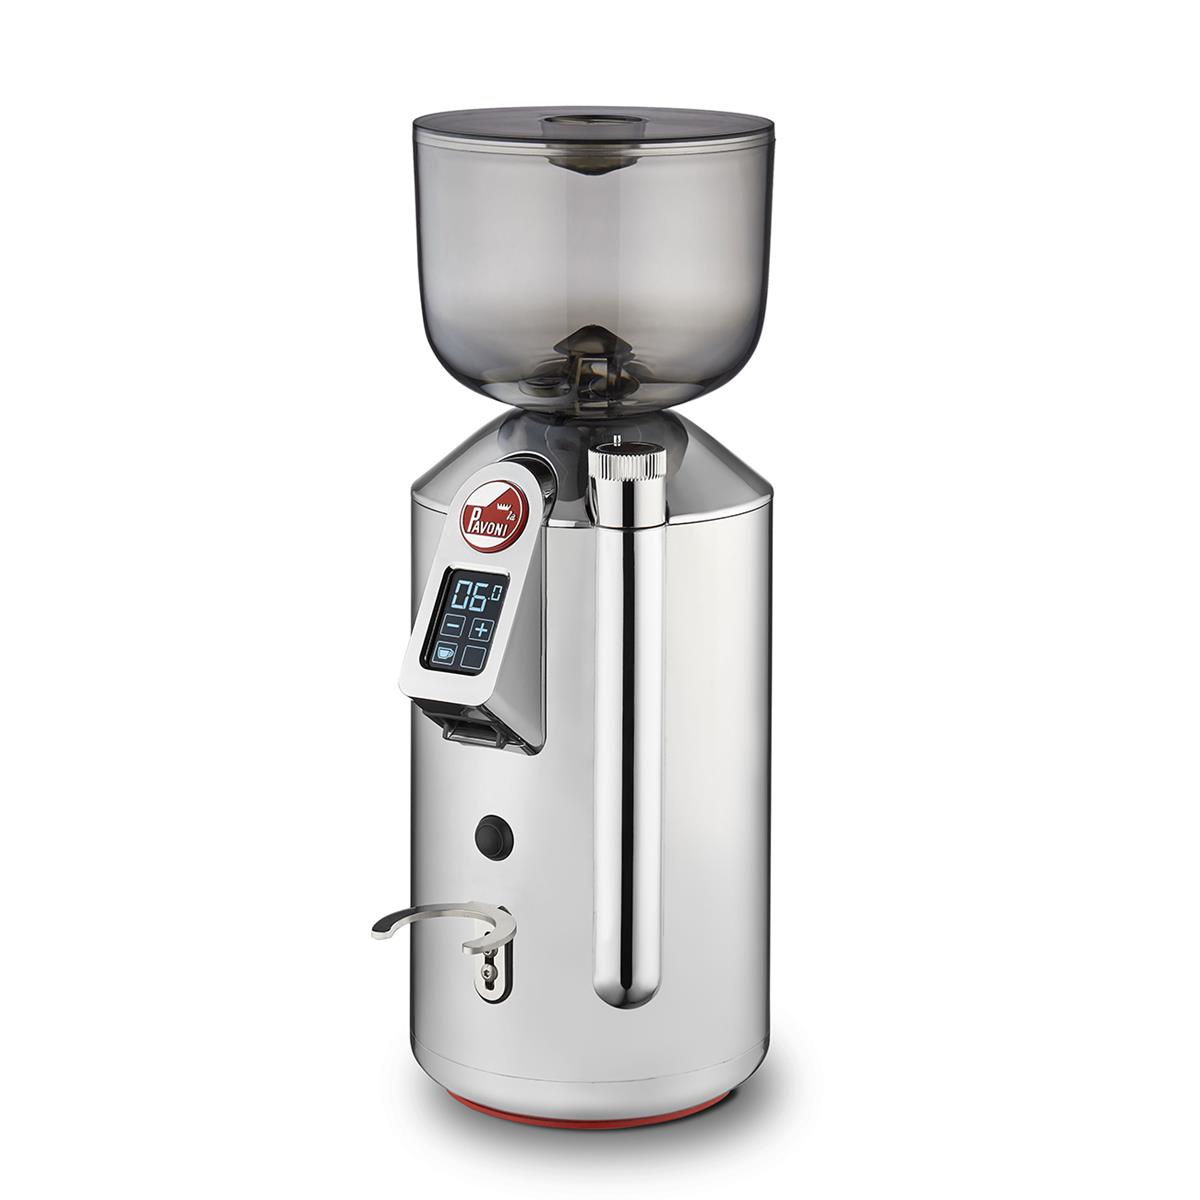 LA PAVONI - Coffee grinder cylinder - 230 V